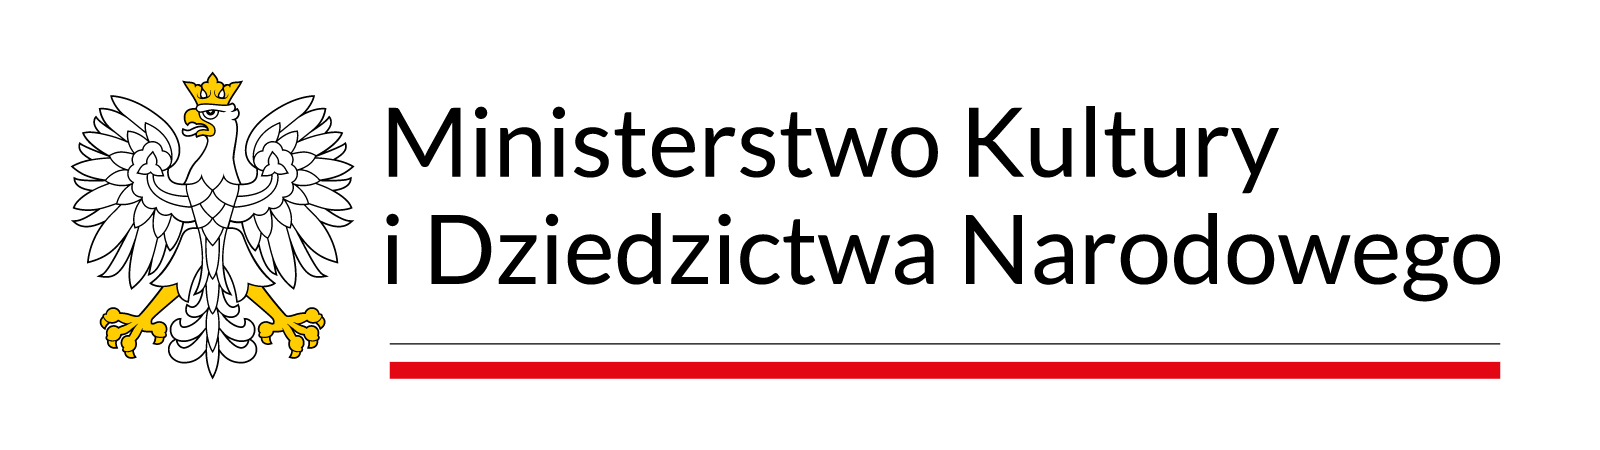 Logotyp Ministerstwa Kultury i Dziedzictwa Narodowego.